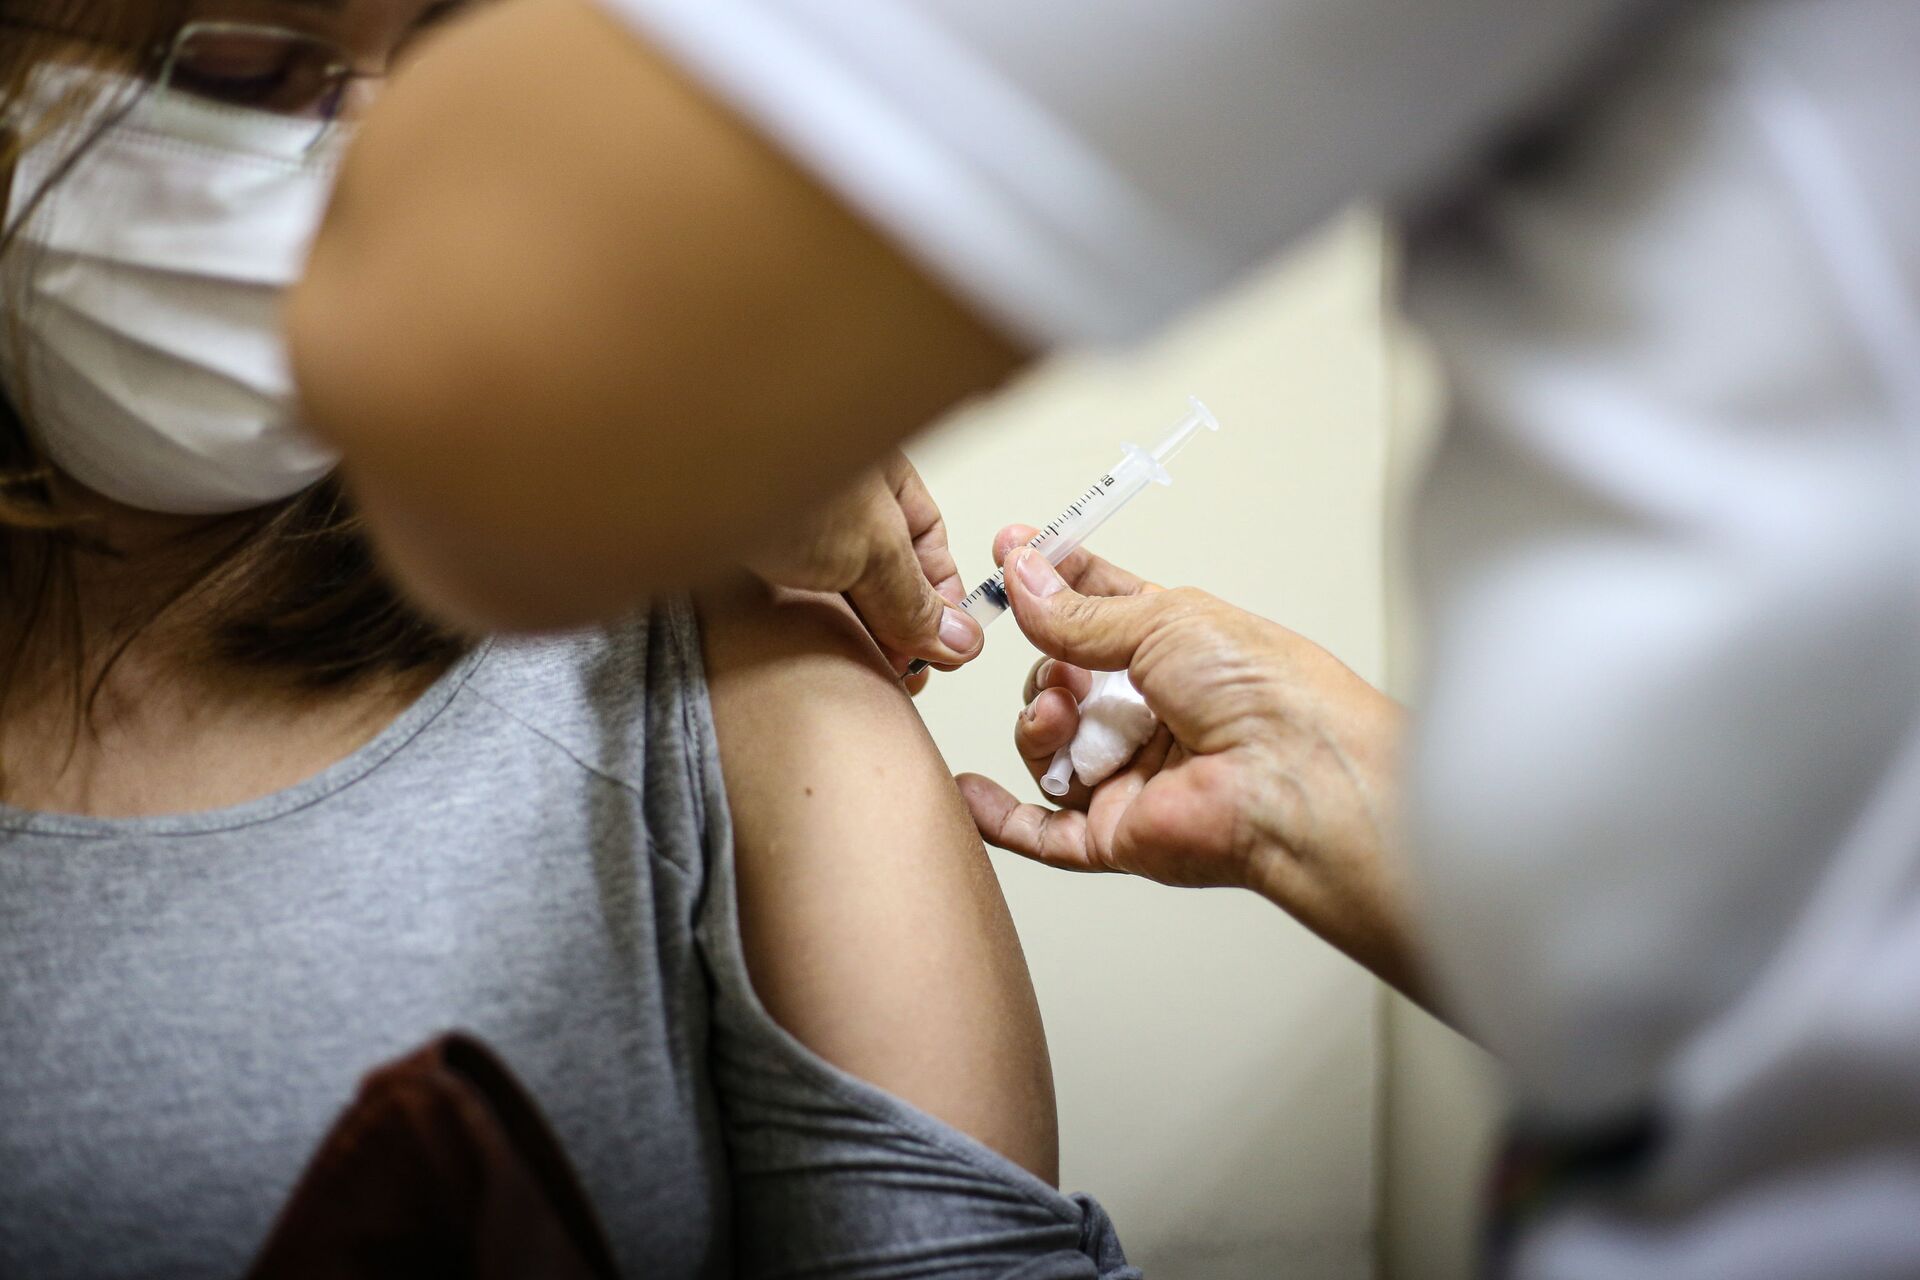 Brasil tem 1,5 milhão de pessoas com a 2ª dose da vacina contra a COVID-19 atrasada - Sputnik Brasil, 1920, 13.04.2021